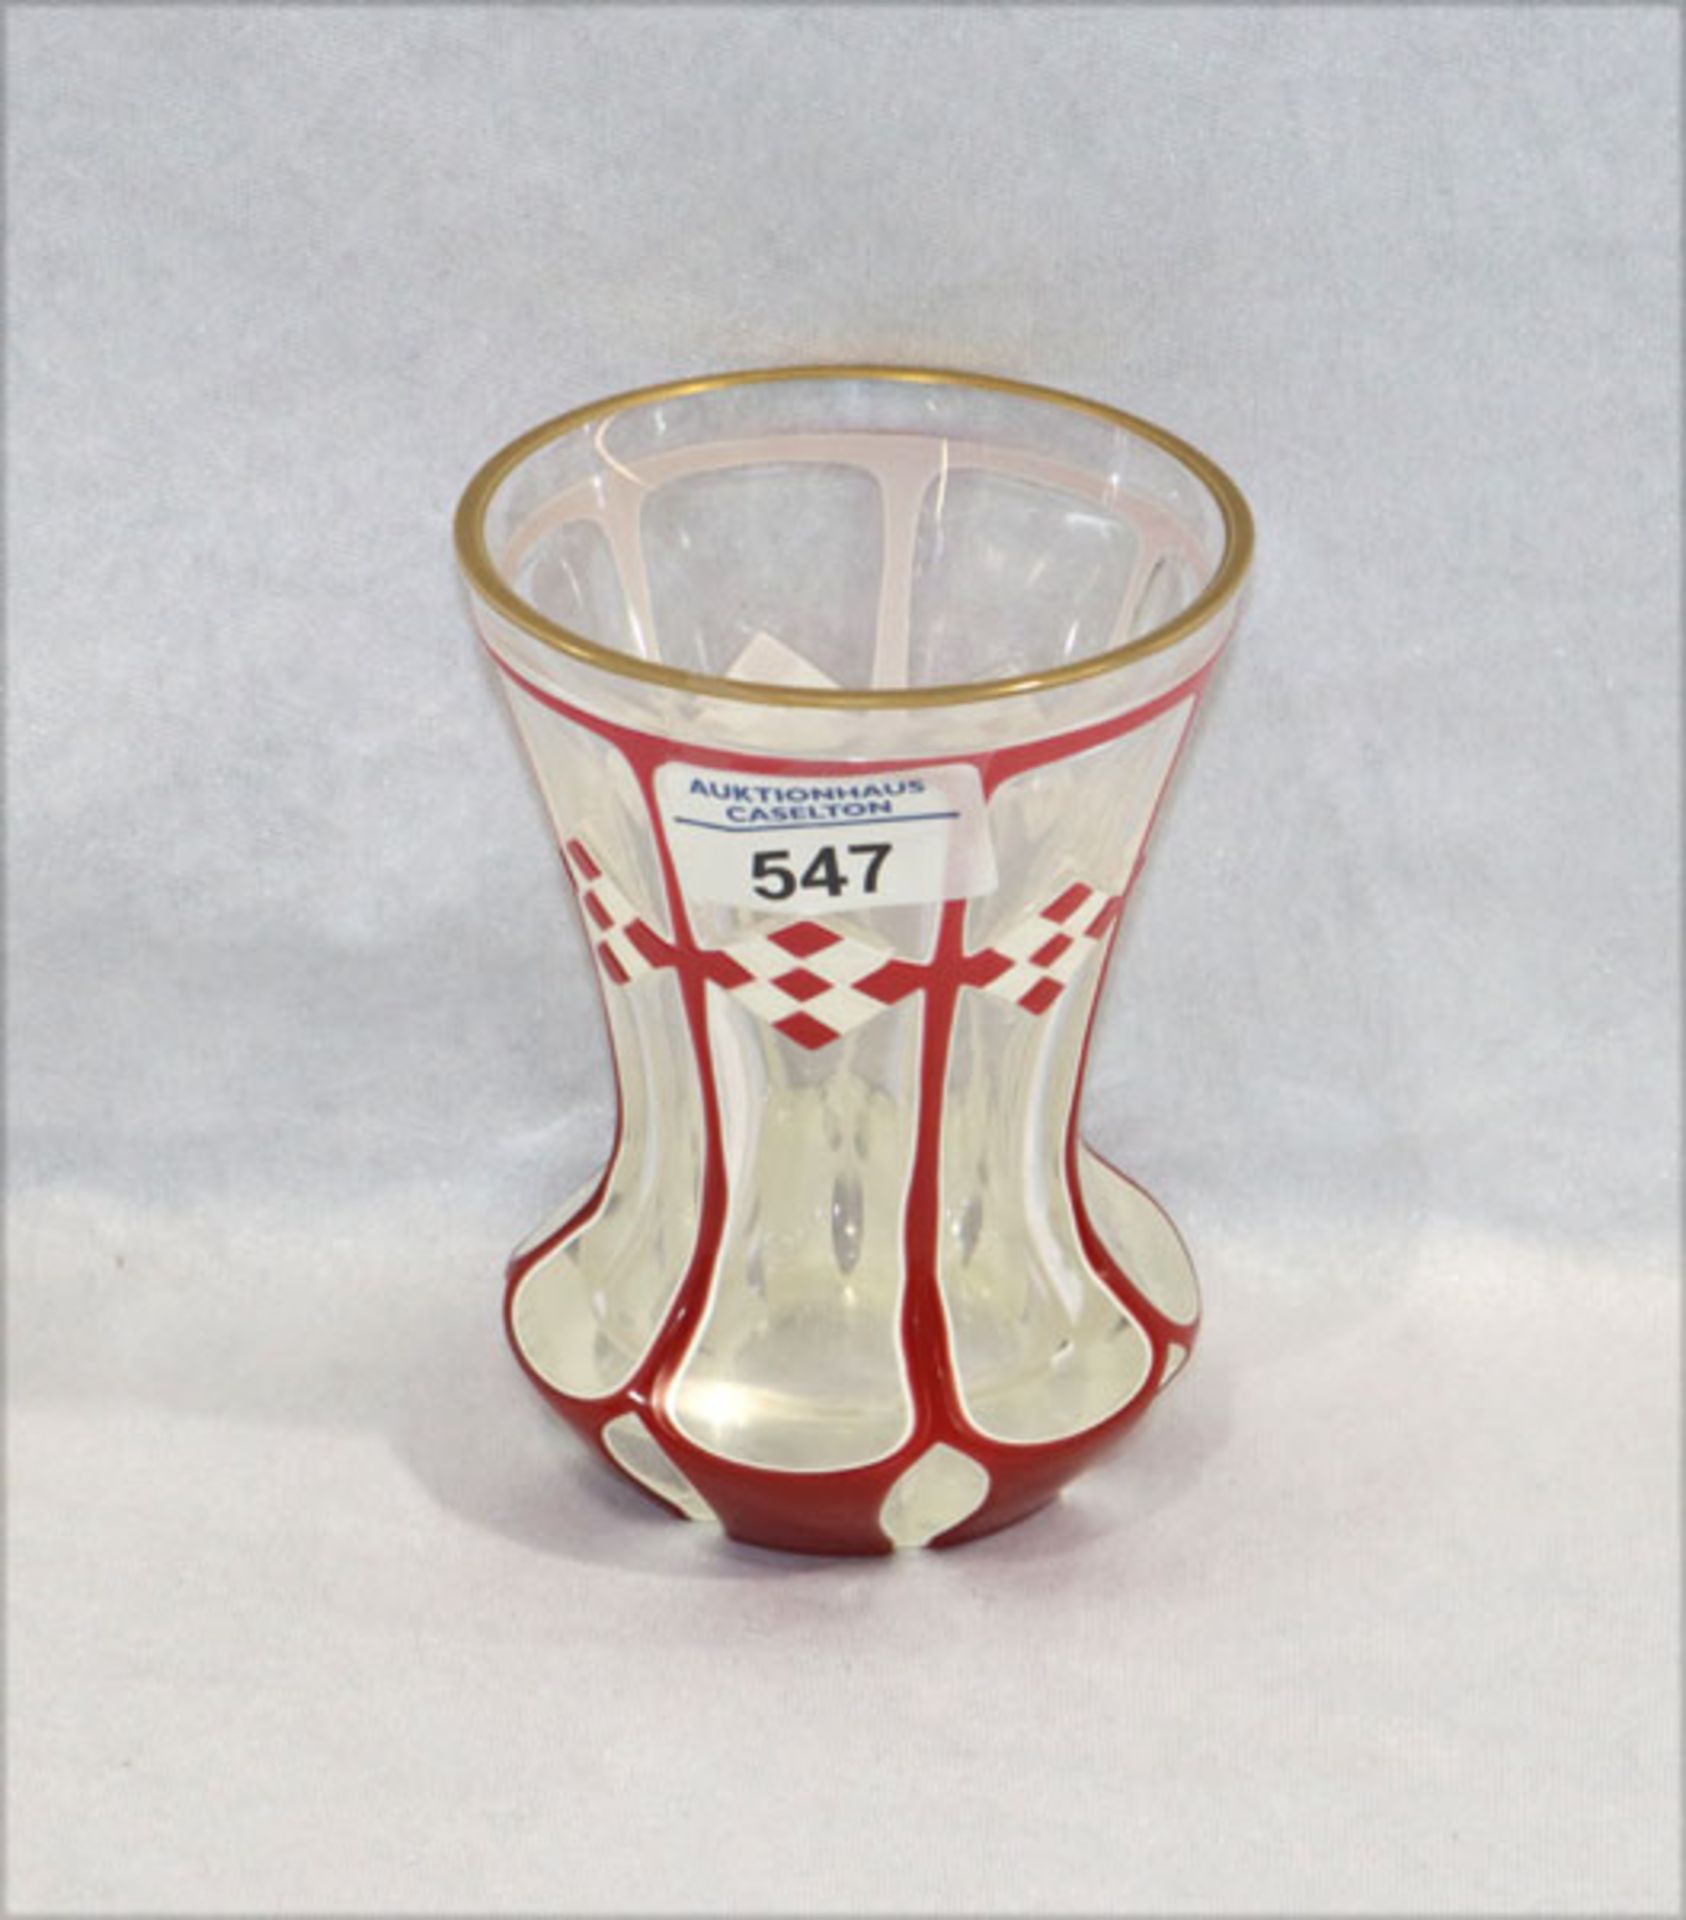 Überfang Glasbecher, Klarglas mit weiß/rotem Überfang, geschliffen, Goldrand, um 1900, wohl